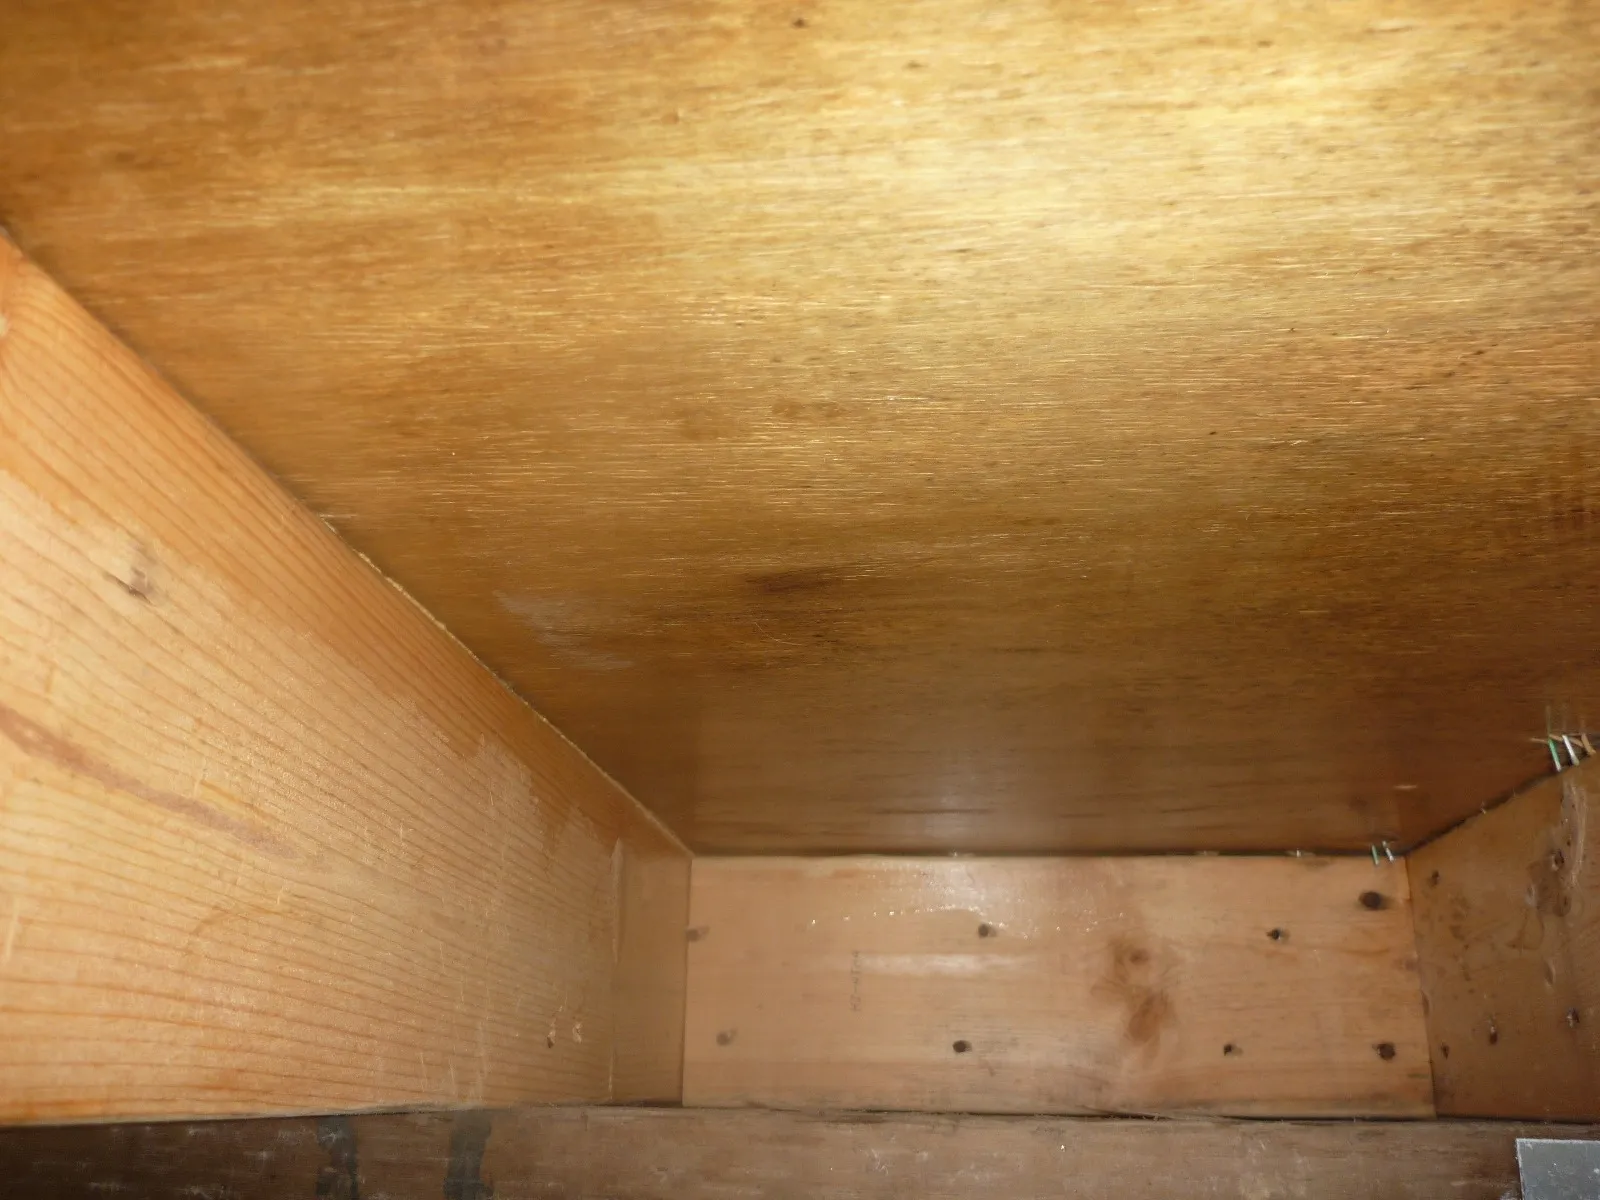 住宅床下木材合板カビの防カビ工事とシロアリ駆除業者の処理の違い